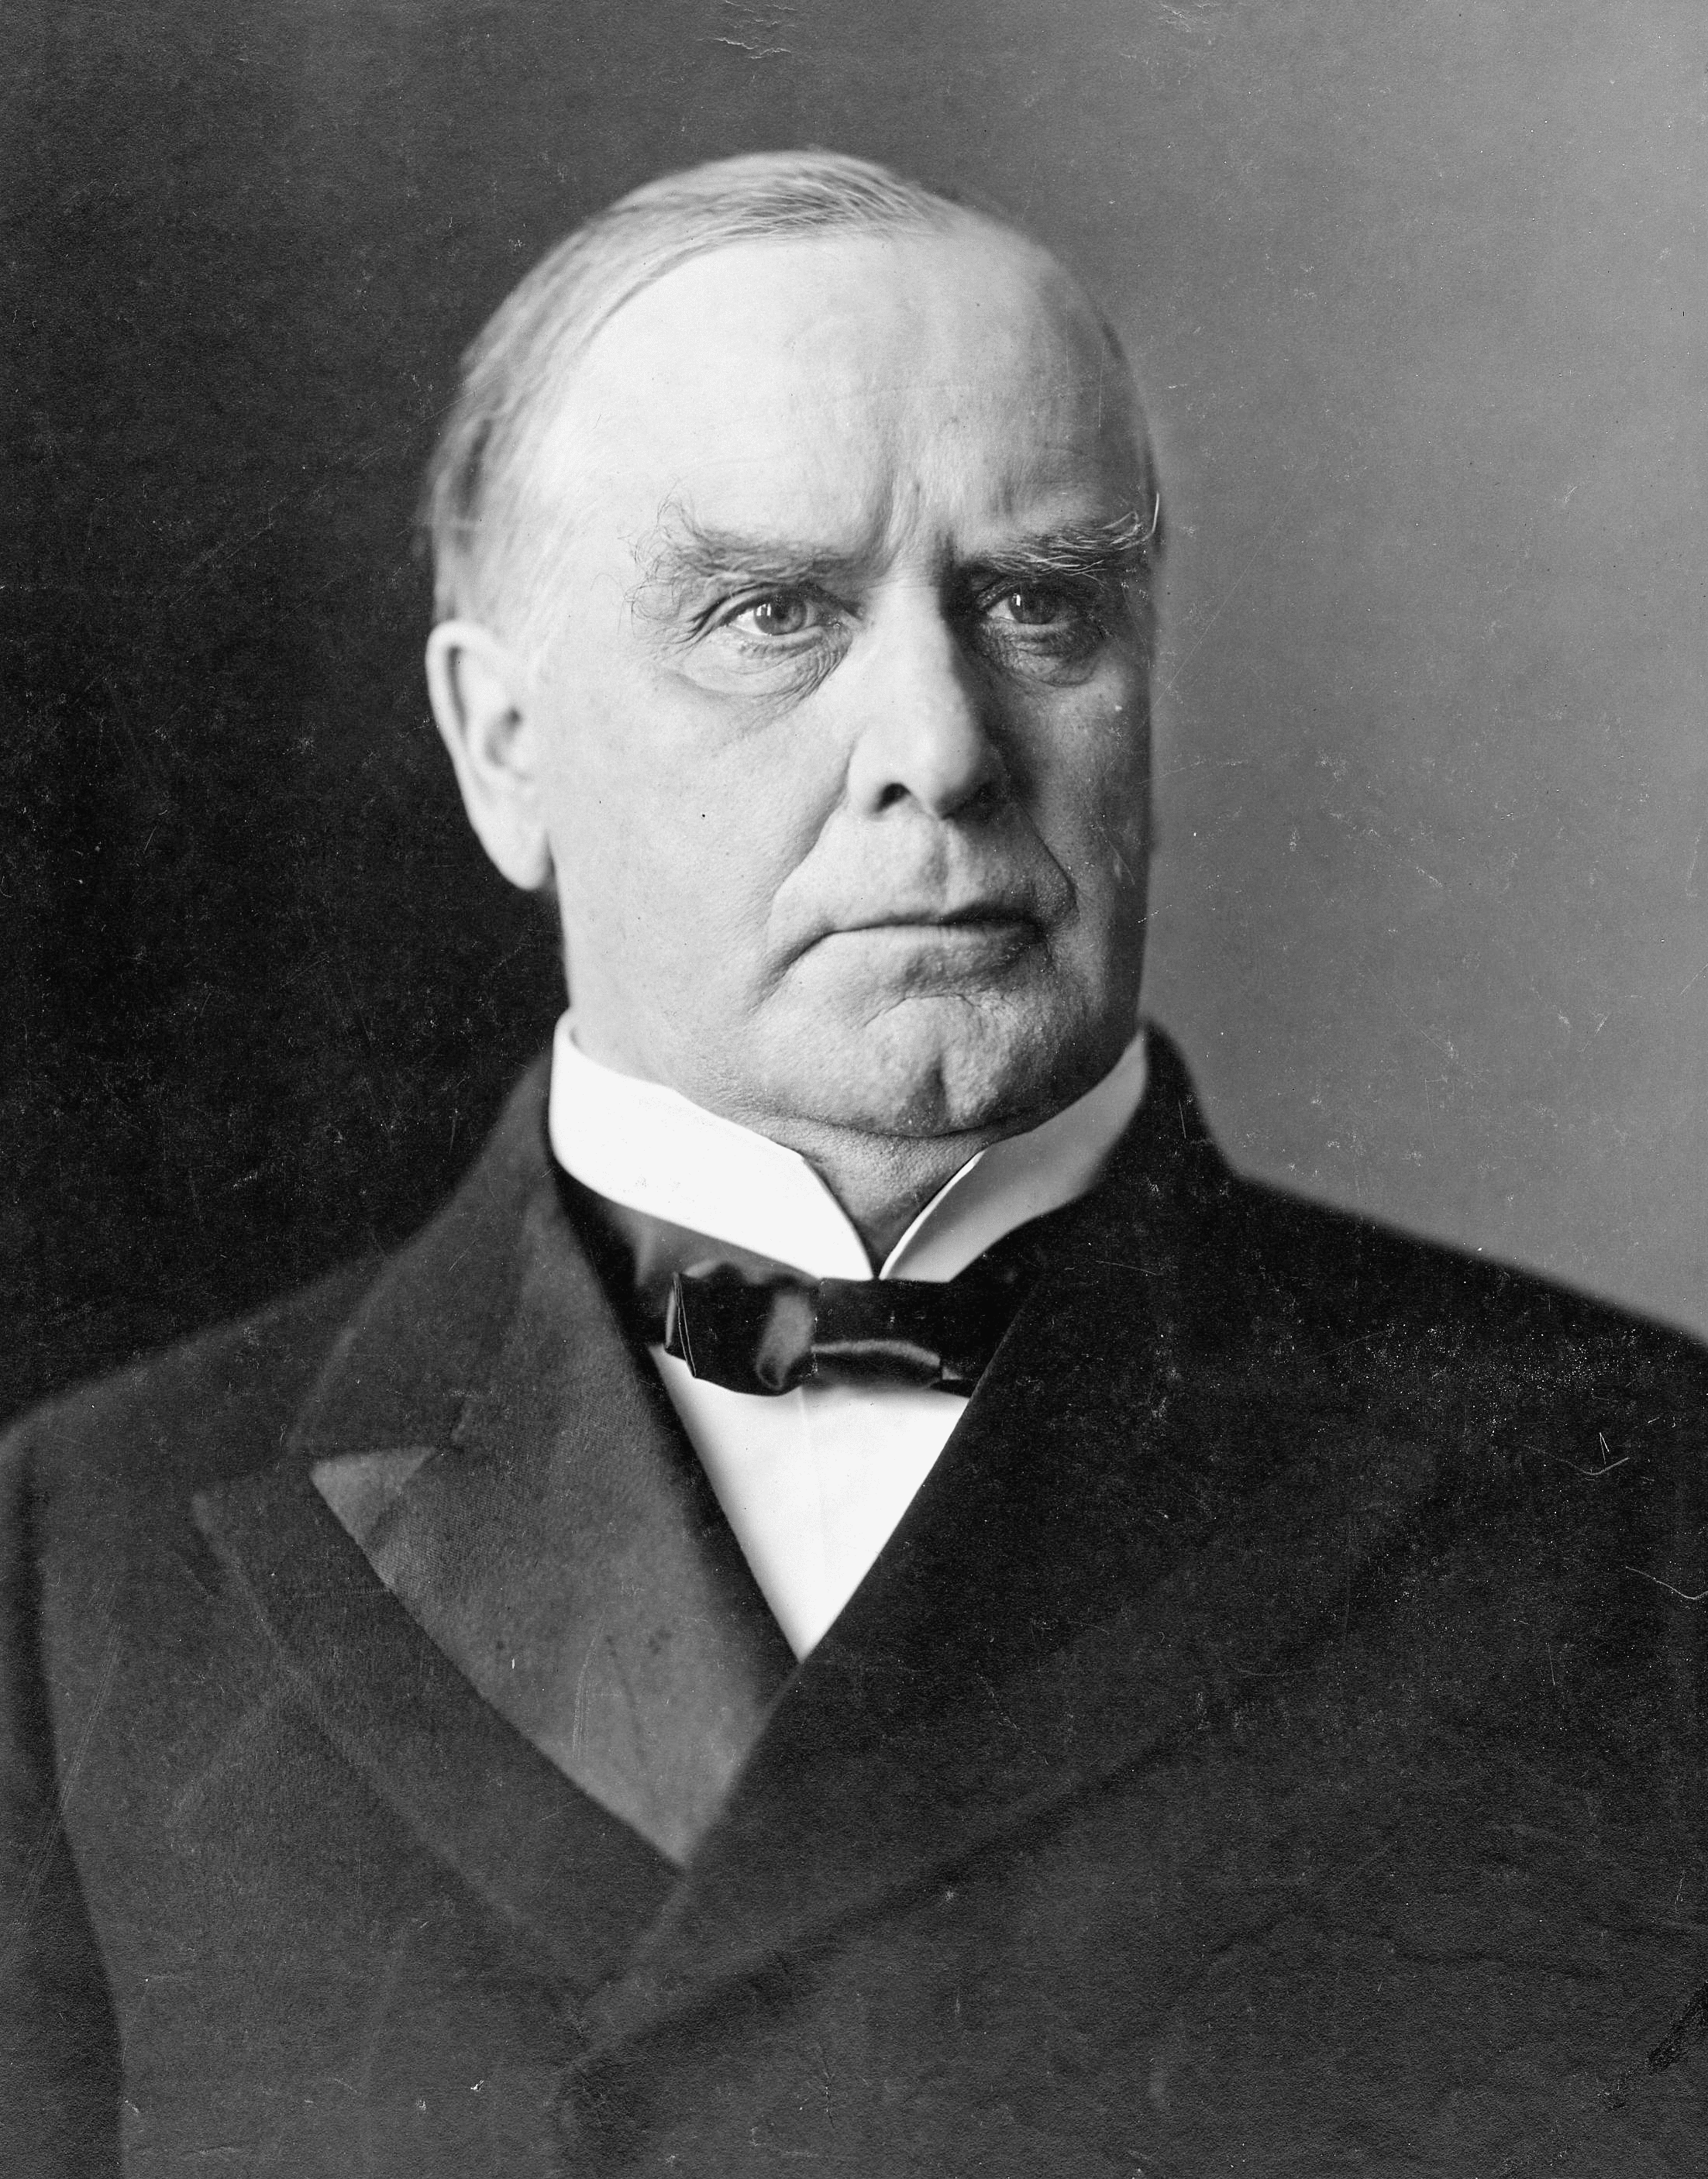  William McKinley